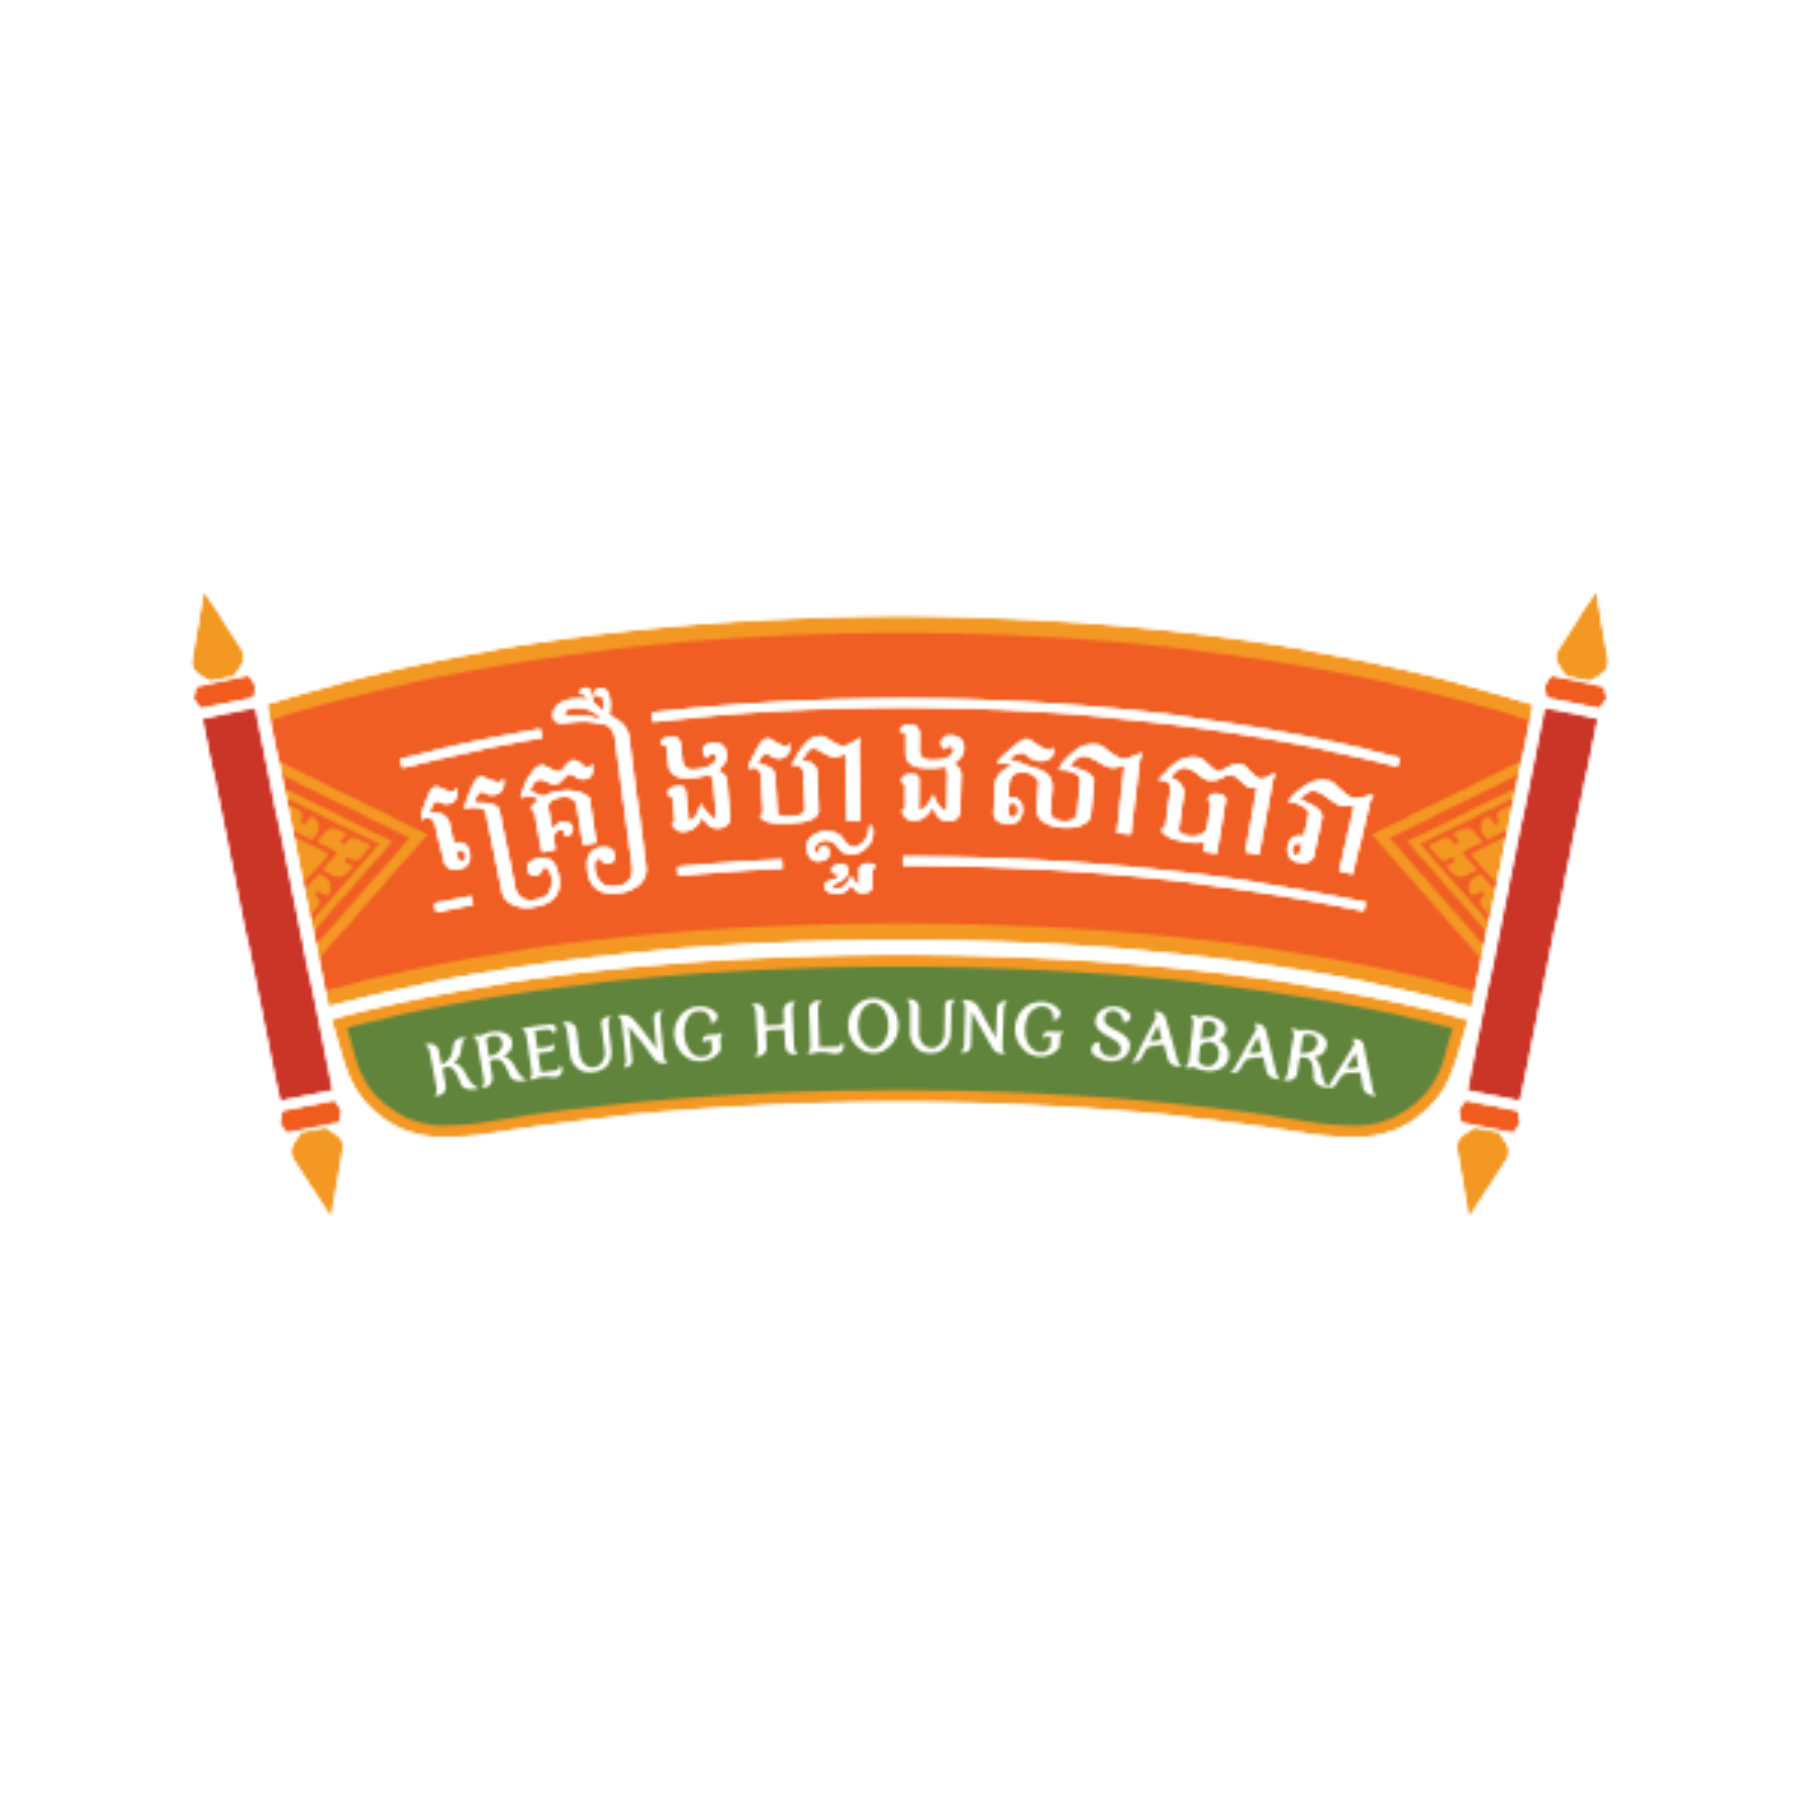 Kreung Hloung Sabara